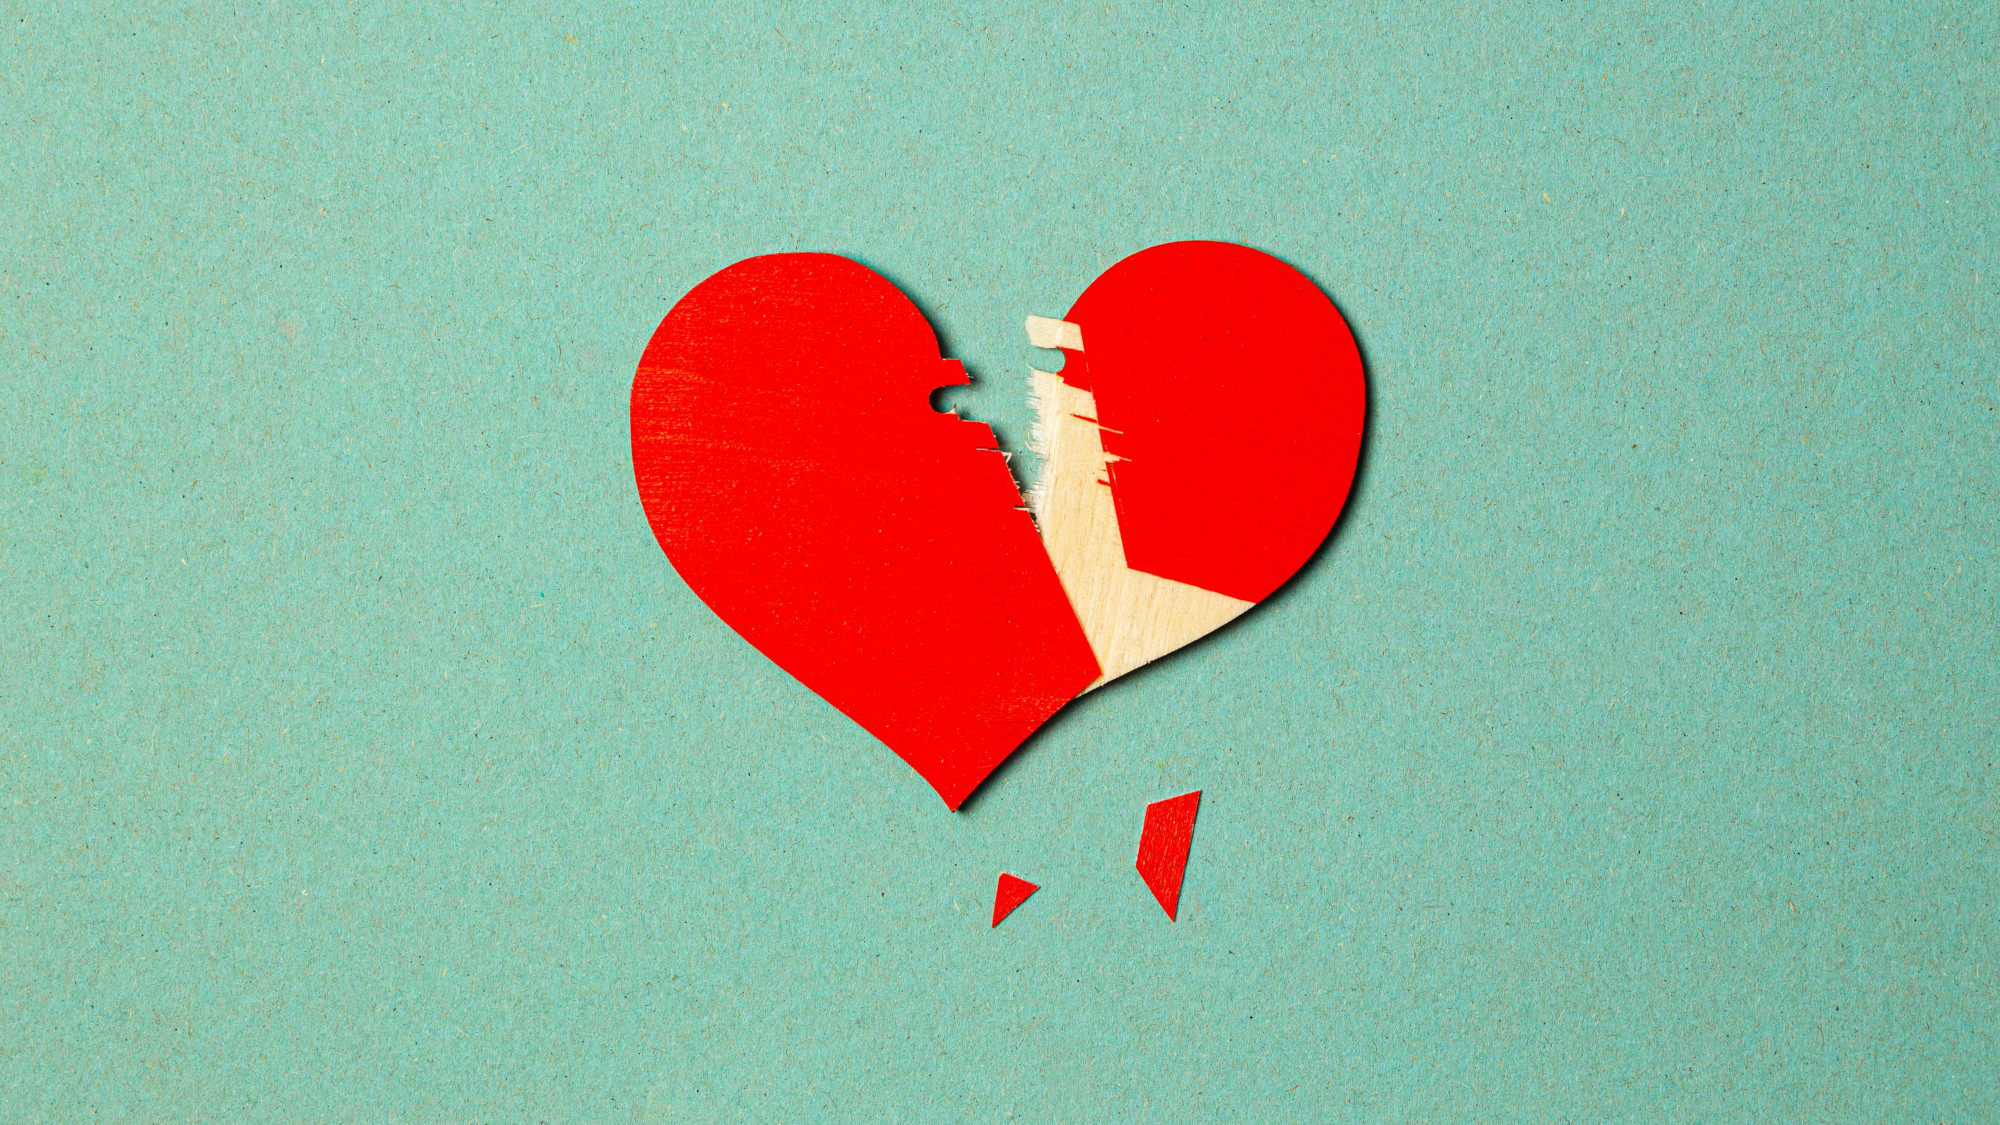 Zerbrochenes rotes Herz auf türkisem Hintergrund.